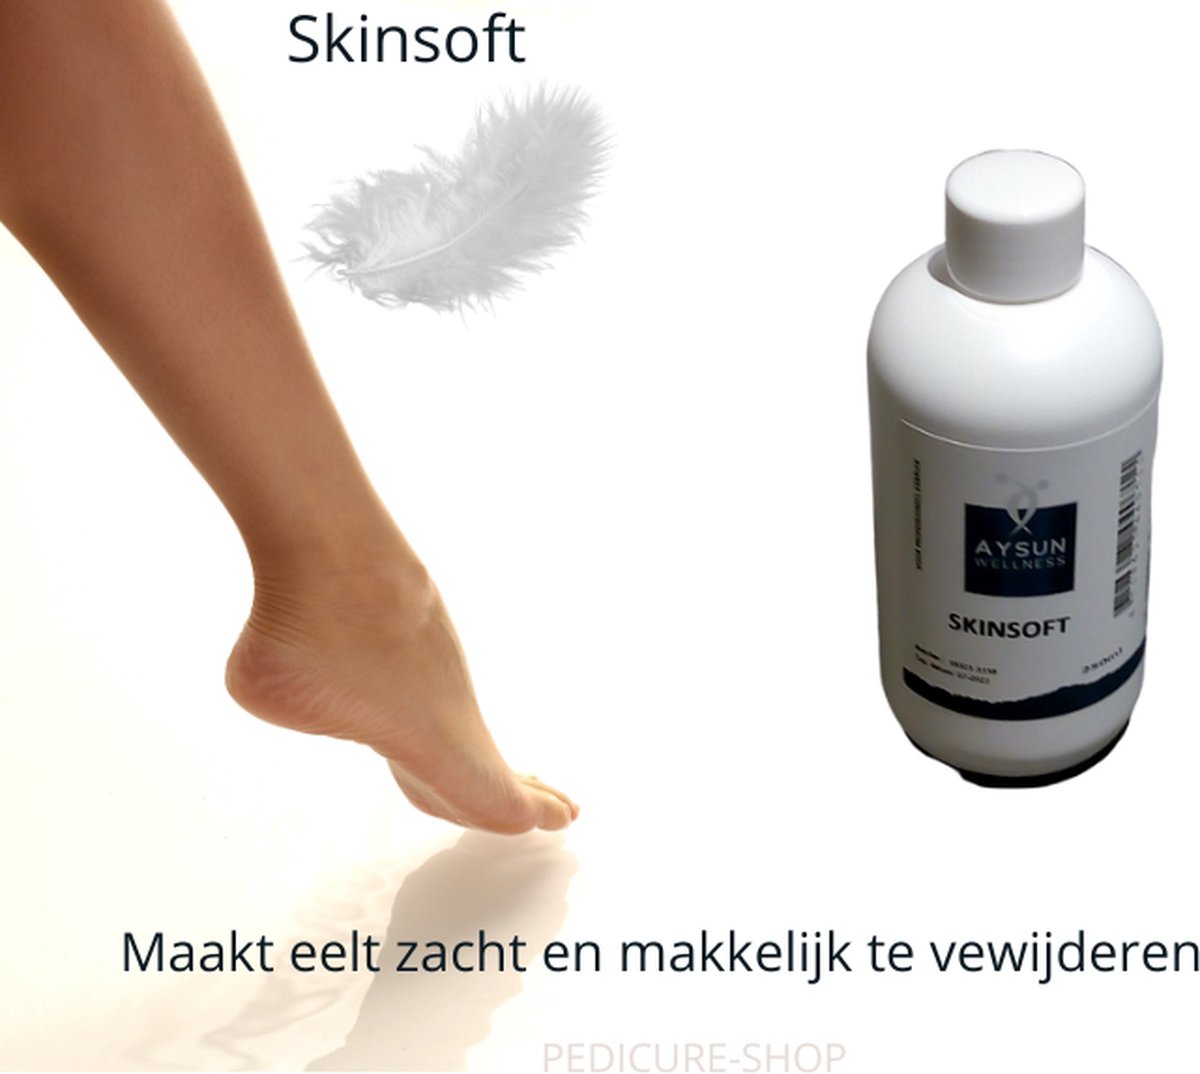 Skinsoft 250 ml - Eeltverweker - Zacht maken van eelt en nagelriemen - Eelt verwijderen op een eenvoudige manier - Skin Soft